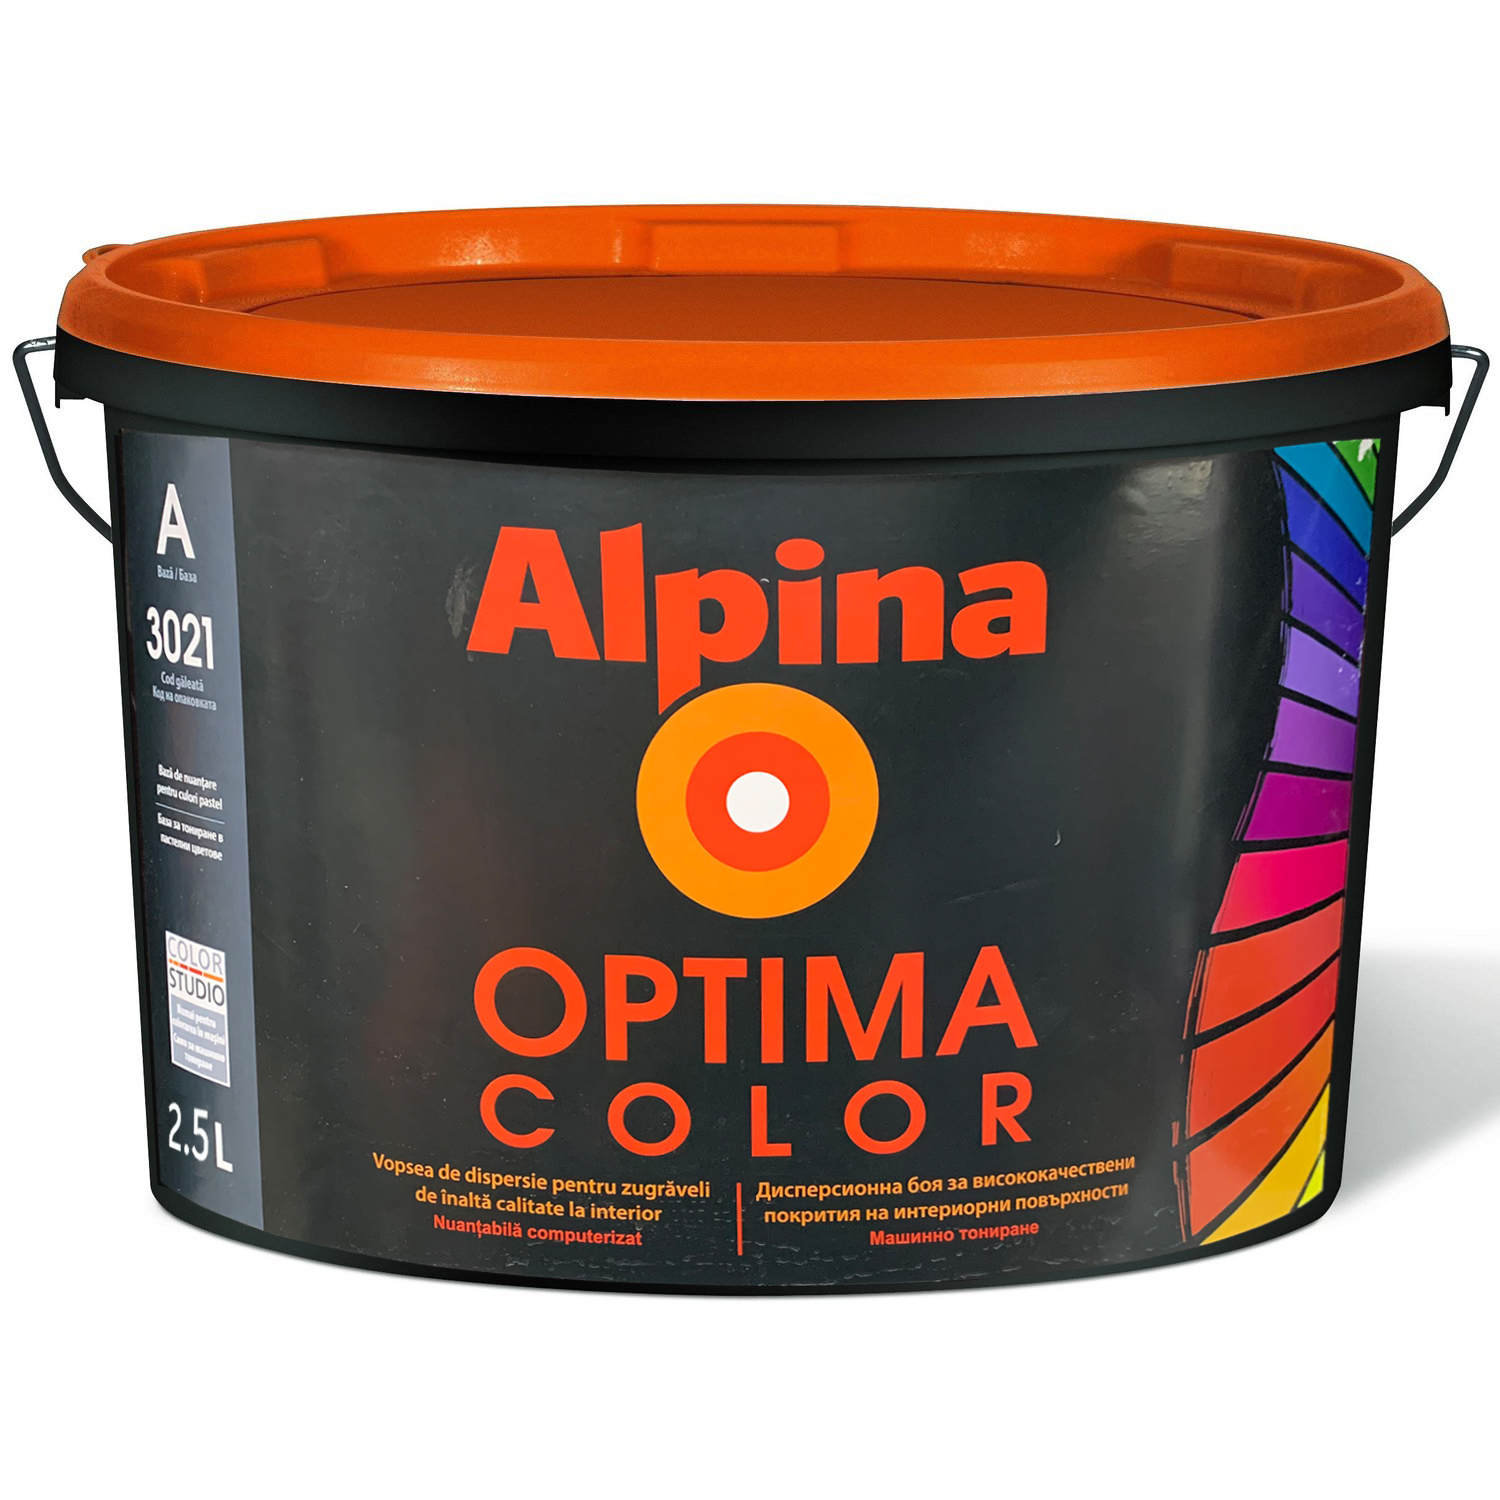 Водоэмульсии Optima Color Baza A 2,5l alpina РУМЫНИЯ